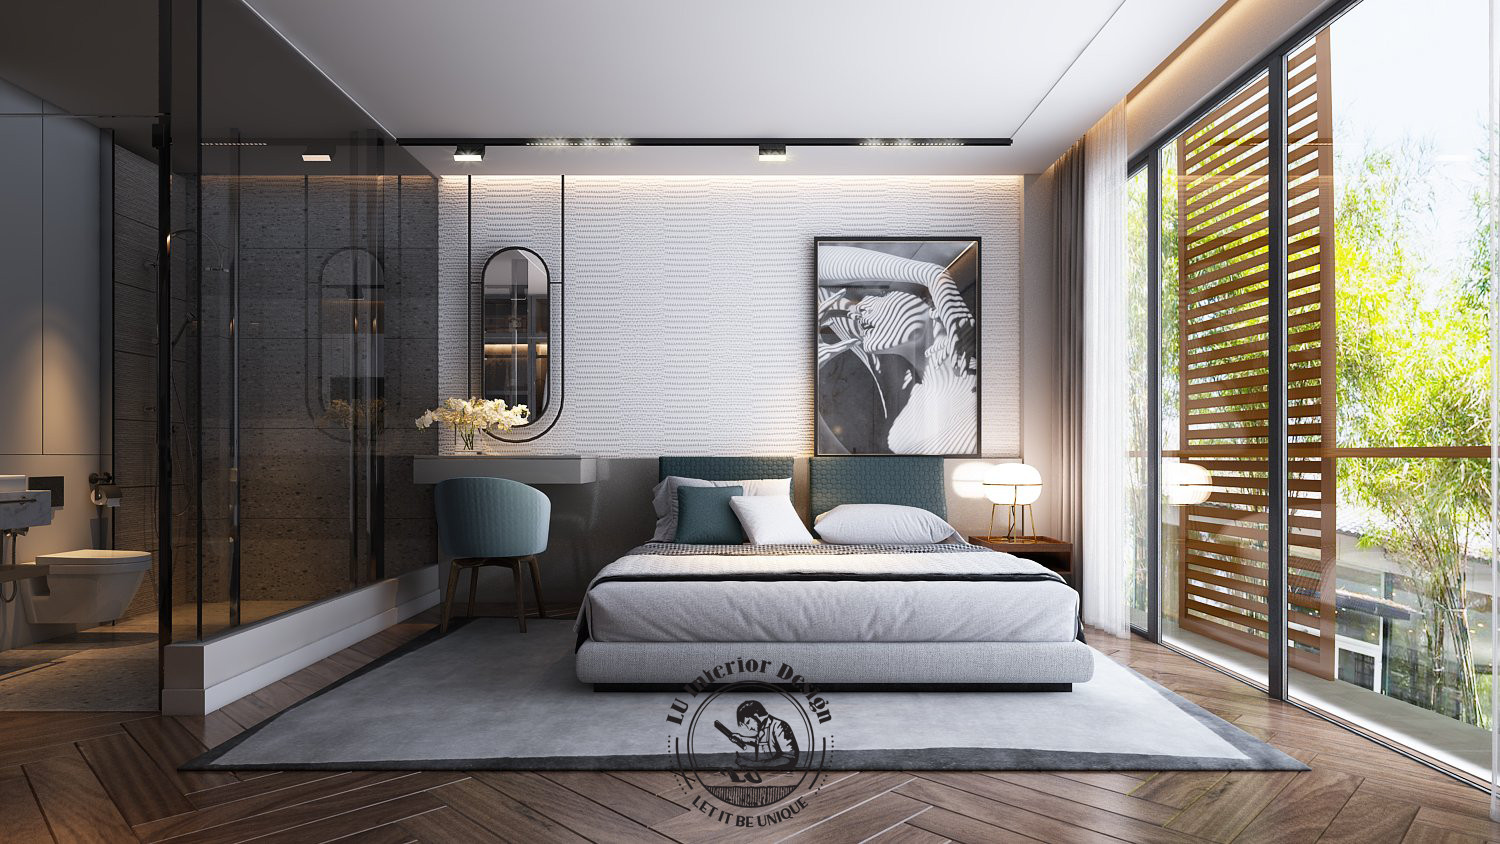 Sử dụng gam màu trung tính trong thiết kế phòng ngủ Hiện đại | Dự án Townhouse Vũng Tàu - LU Design thực hiện.